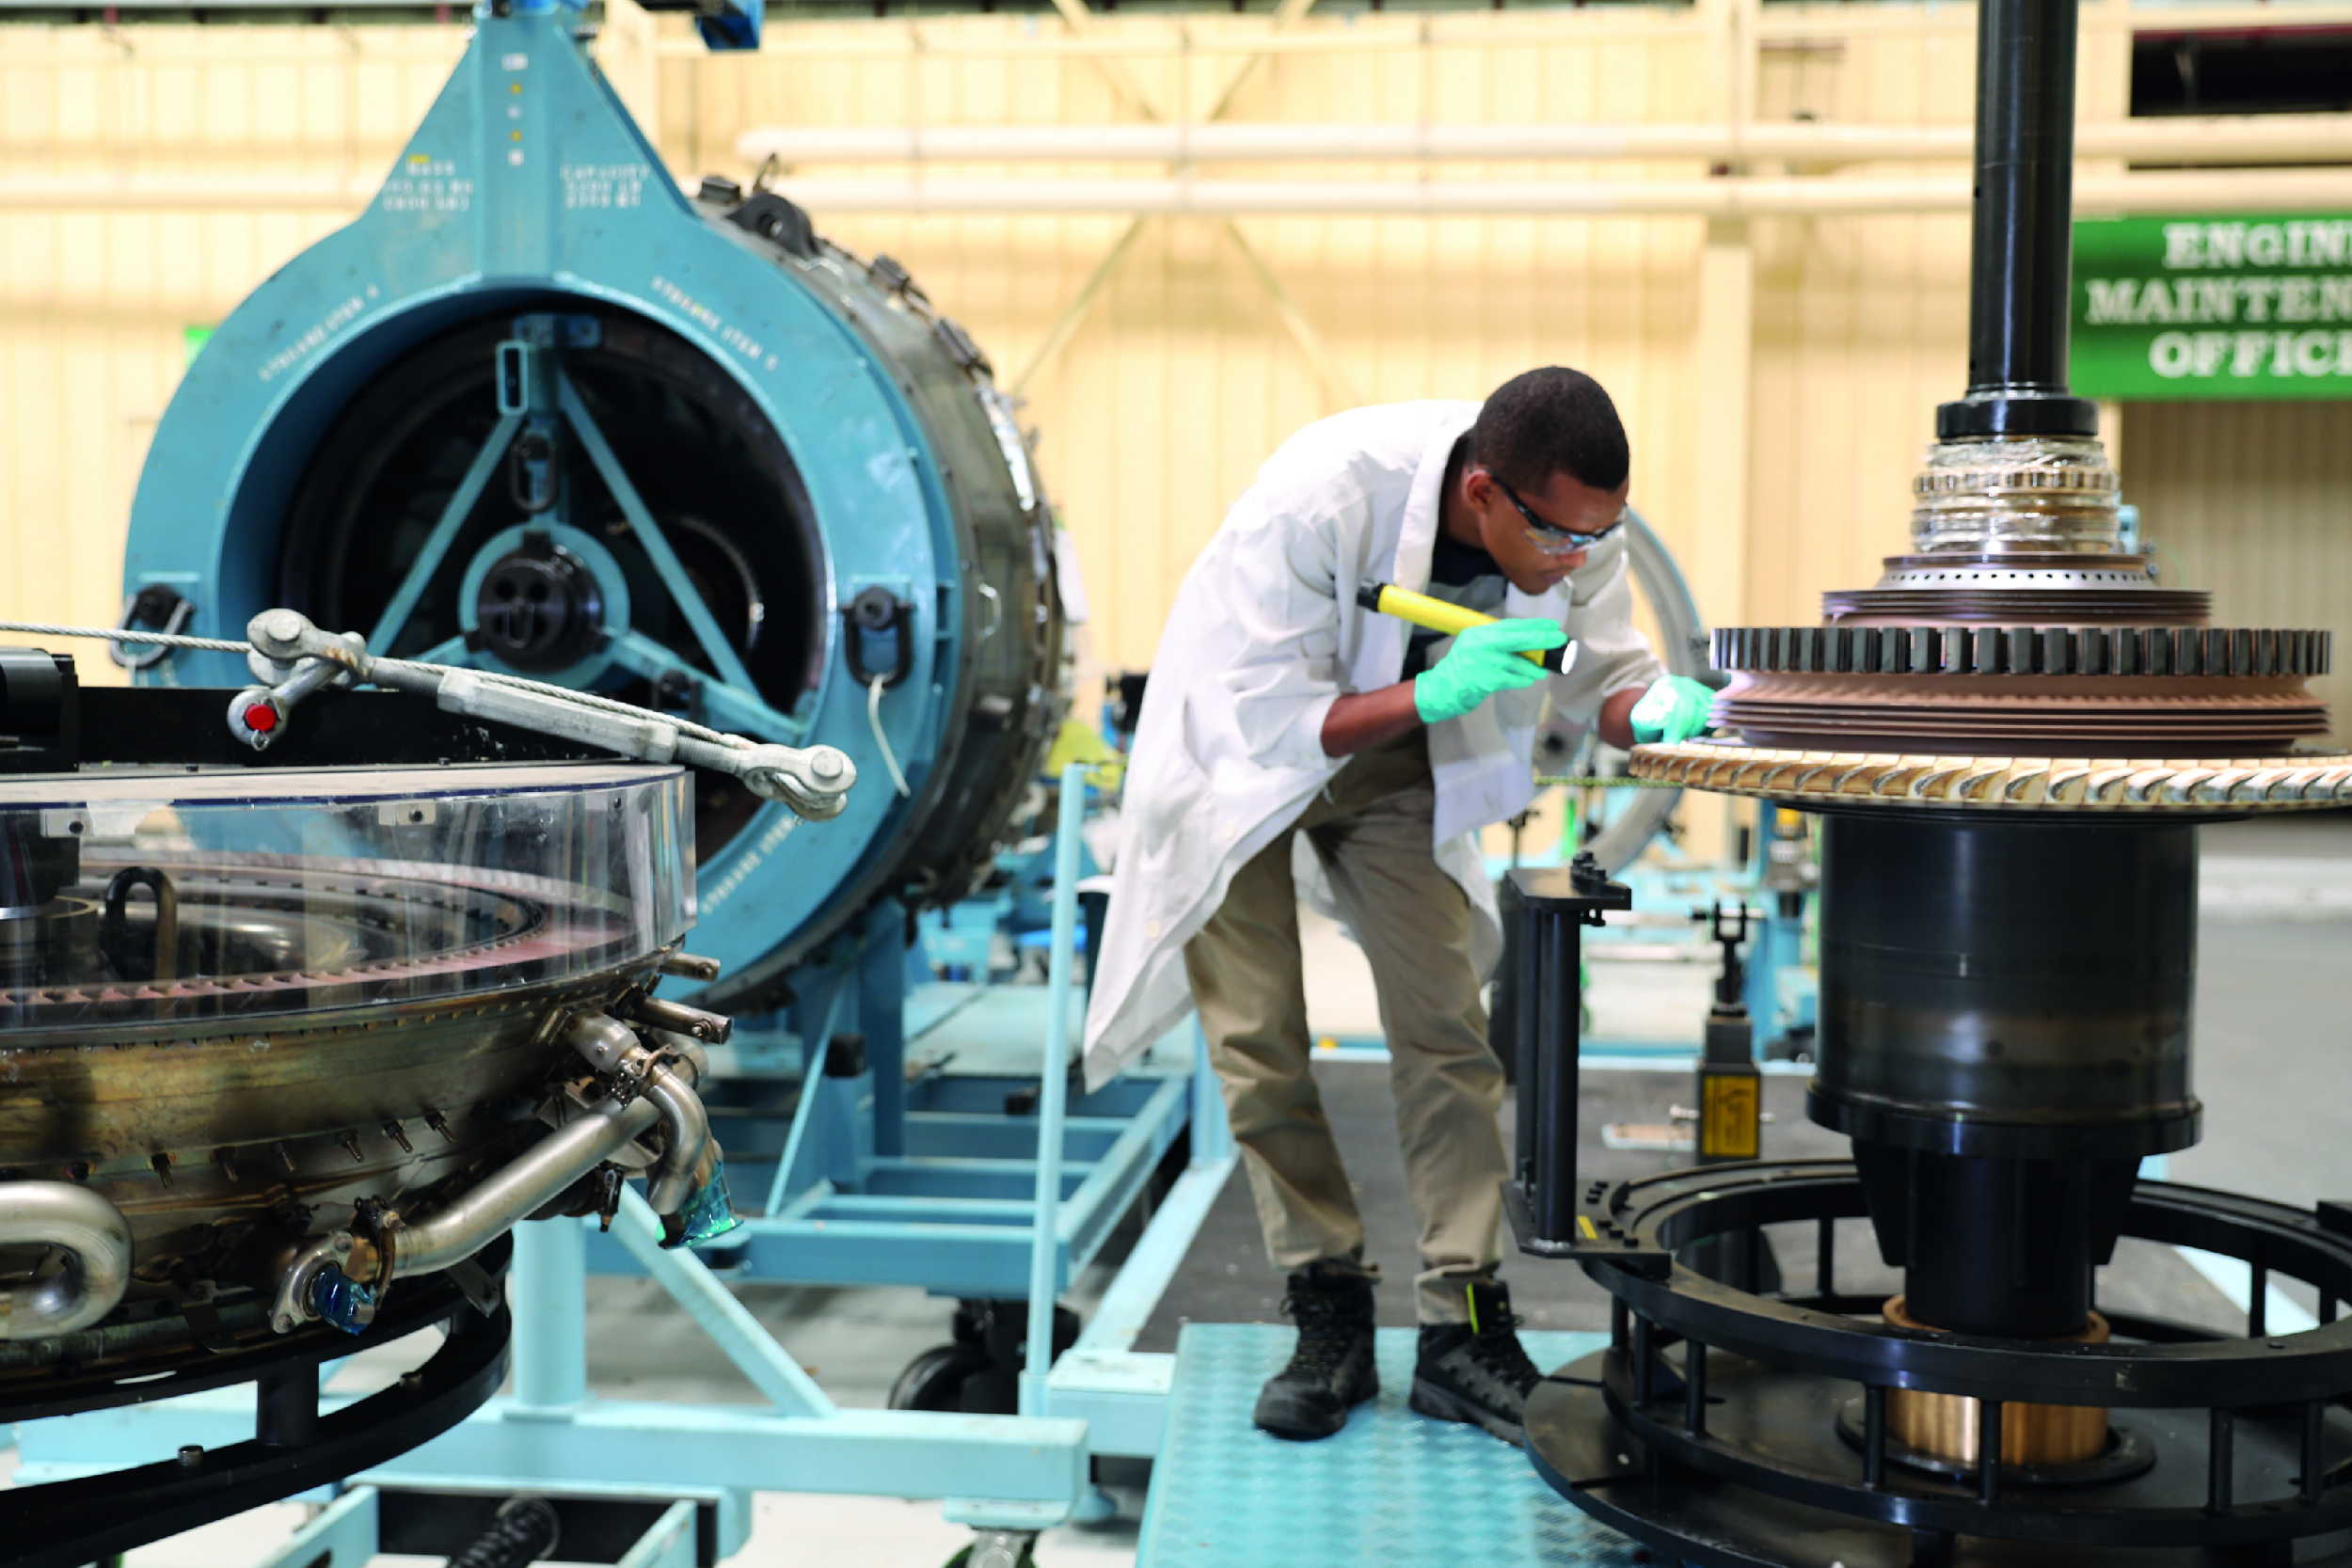 Ethiopian Pioneers 1st GEnx Engine Repair in Africa